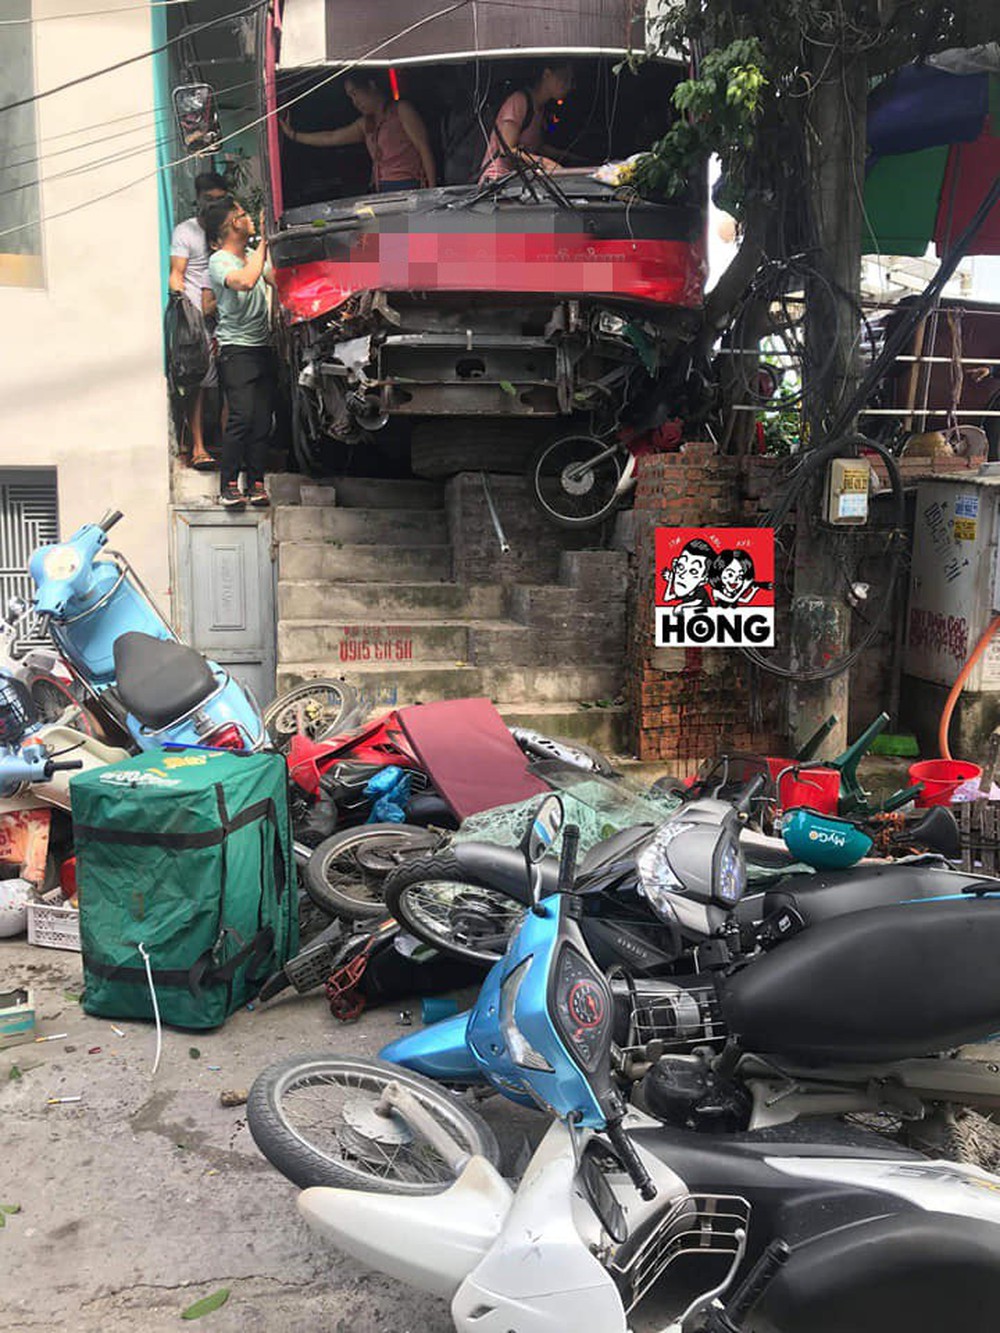 Hiện trường hỗn loạn của vụ tai nạn xe khách nổ lốp tông hàng loạt xe máy ở Quảng Ninh - Ảnh 7.